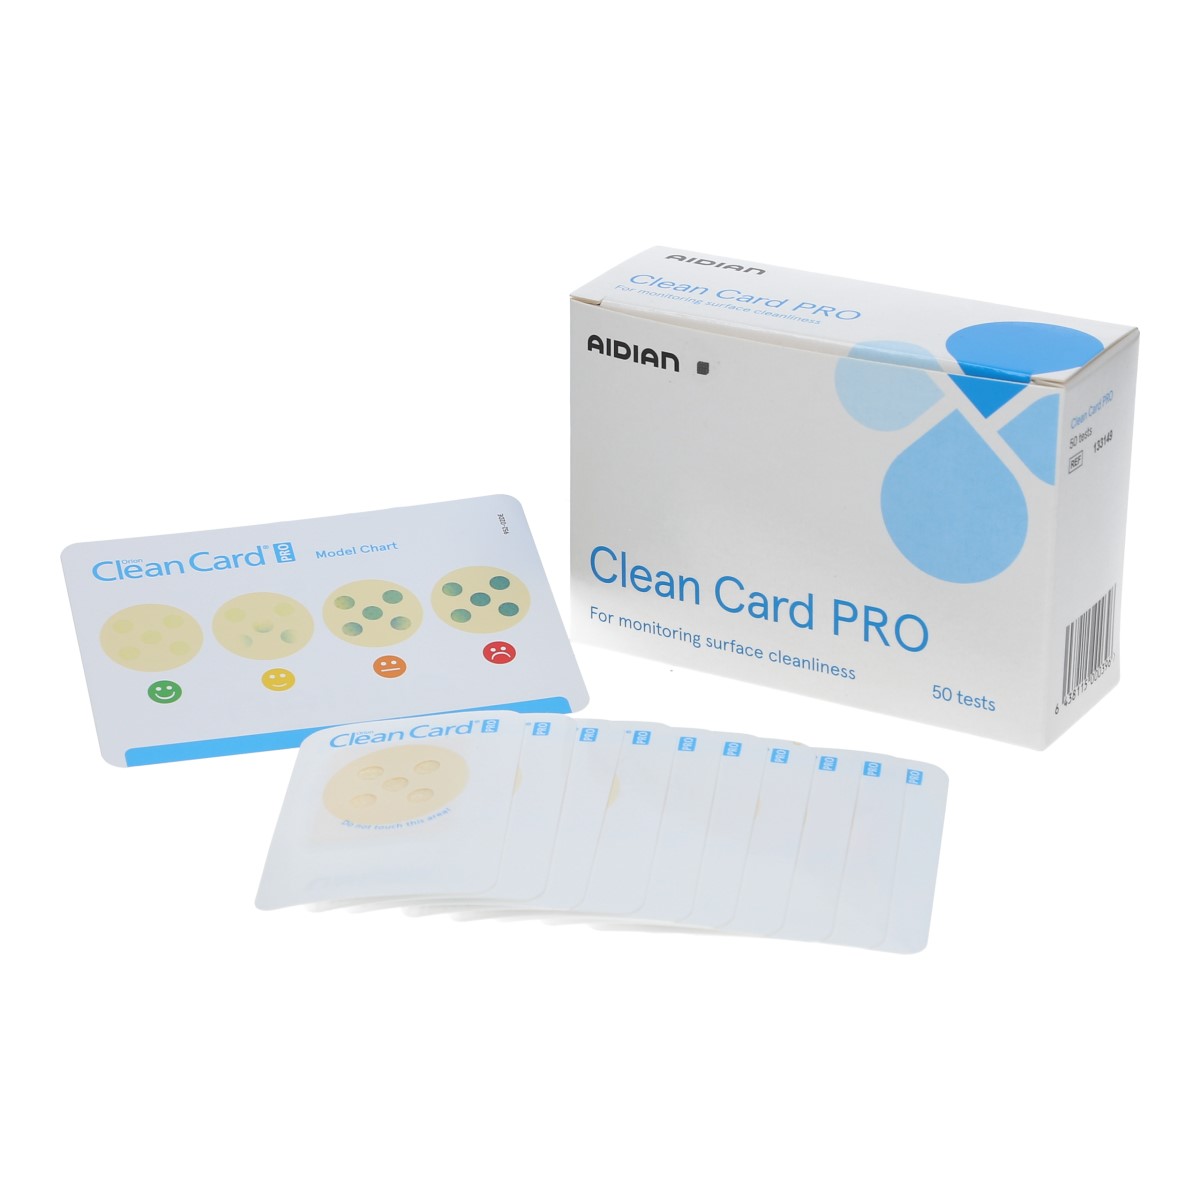 clean card keimindikatoren proteintest Kontaktobjektträger